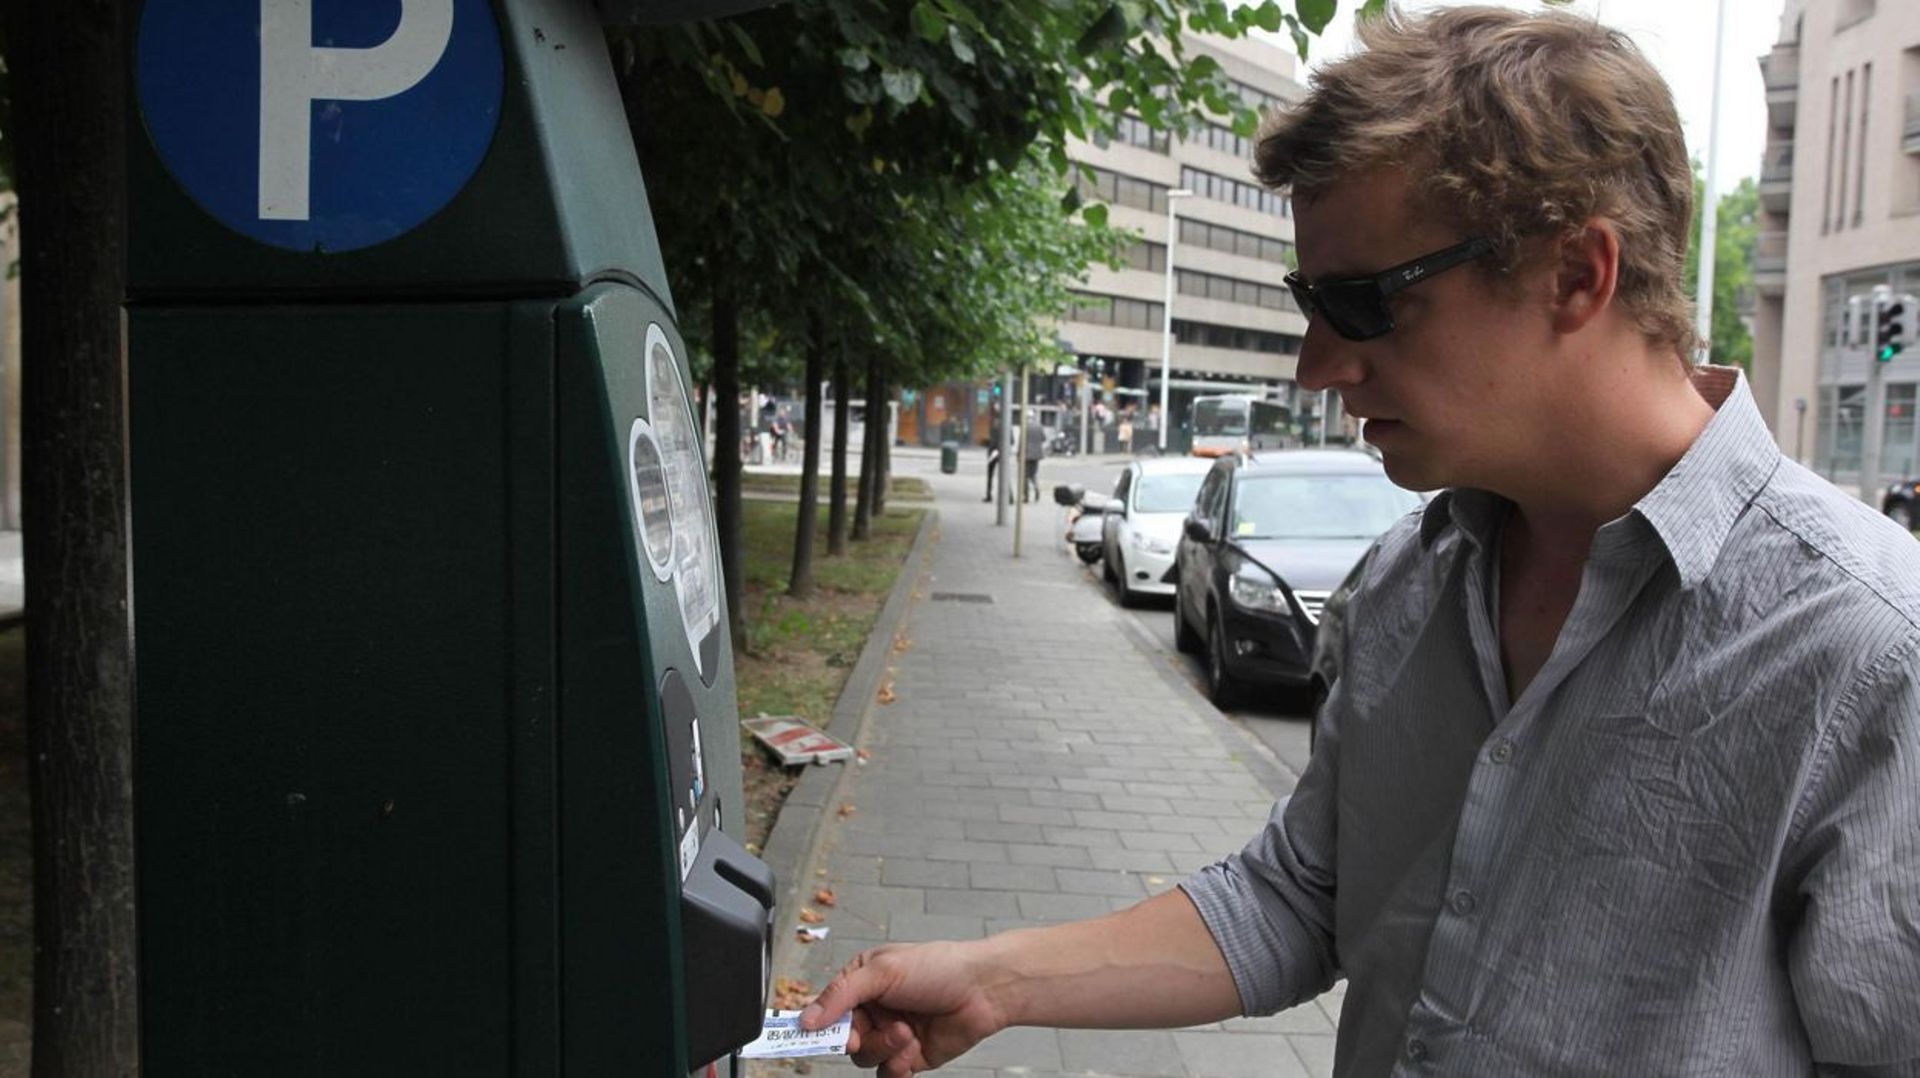 Le service clientèle de Parking Brussels ne répond plus : "Nous avons manqué d'anticipation"